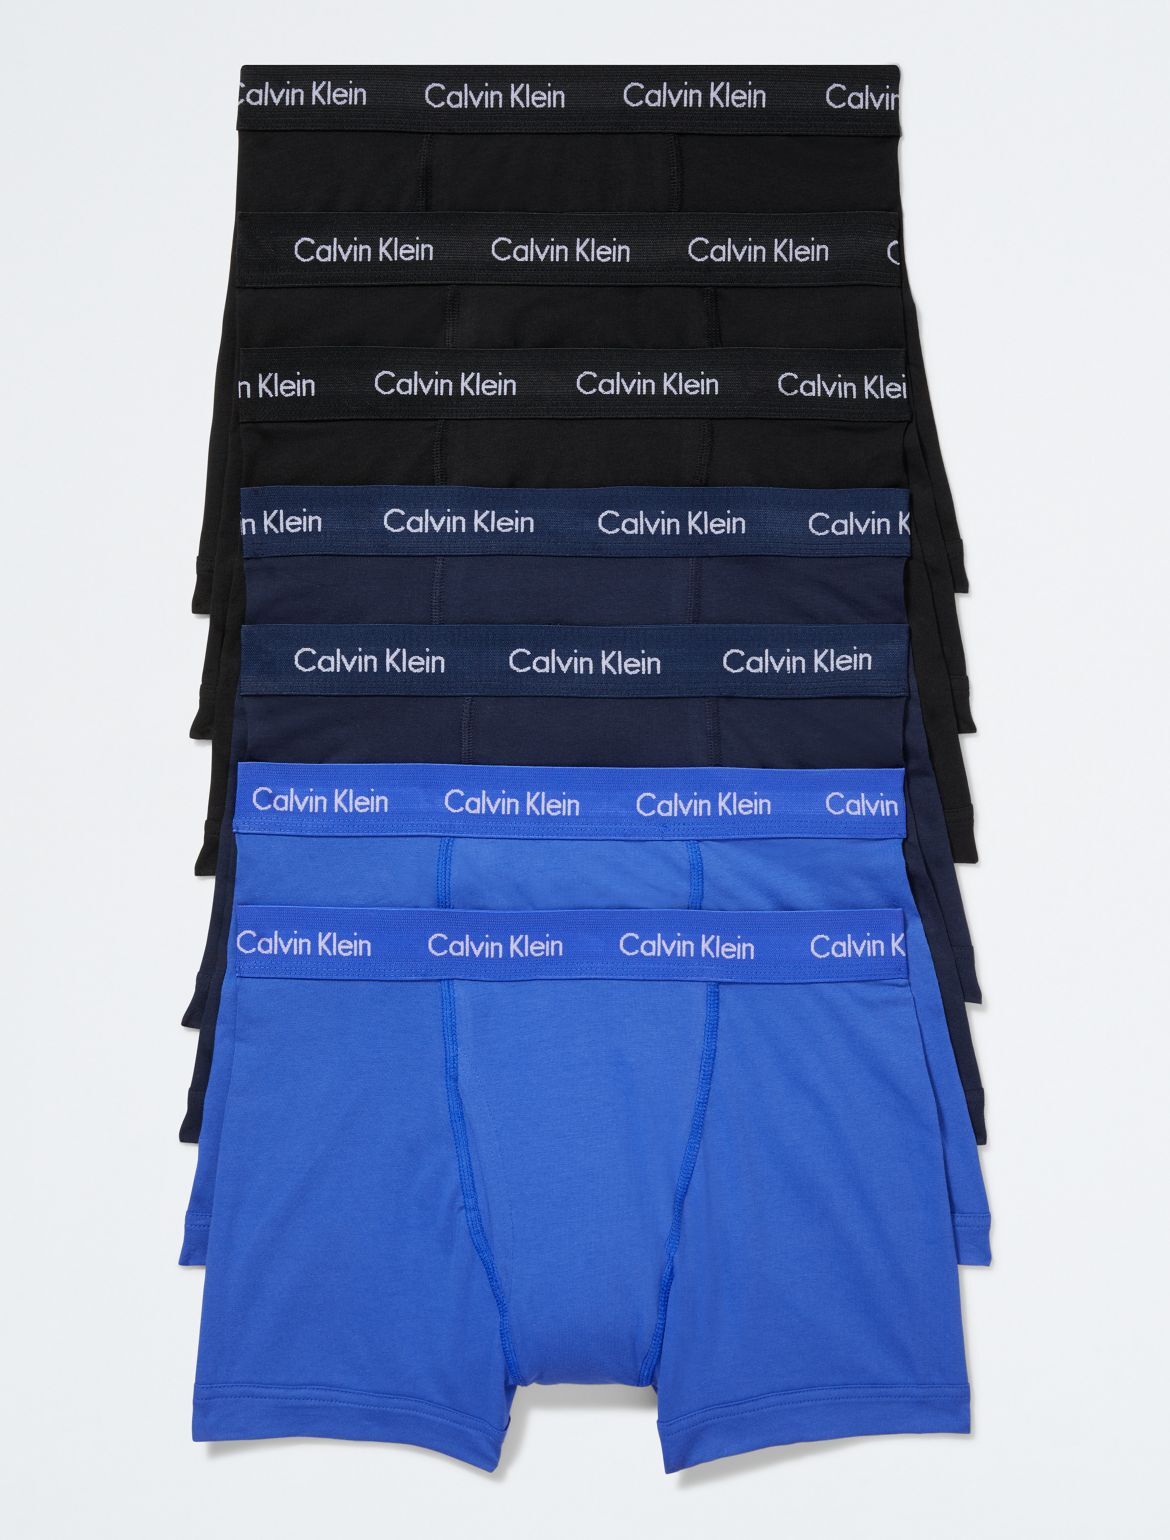 Calvin Klein Men's Cotton Stretch 7-Pack Trunk - Grey - S